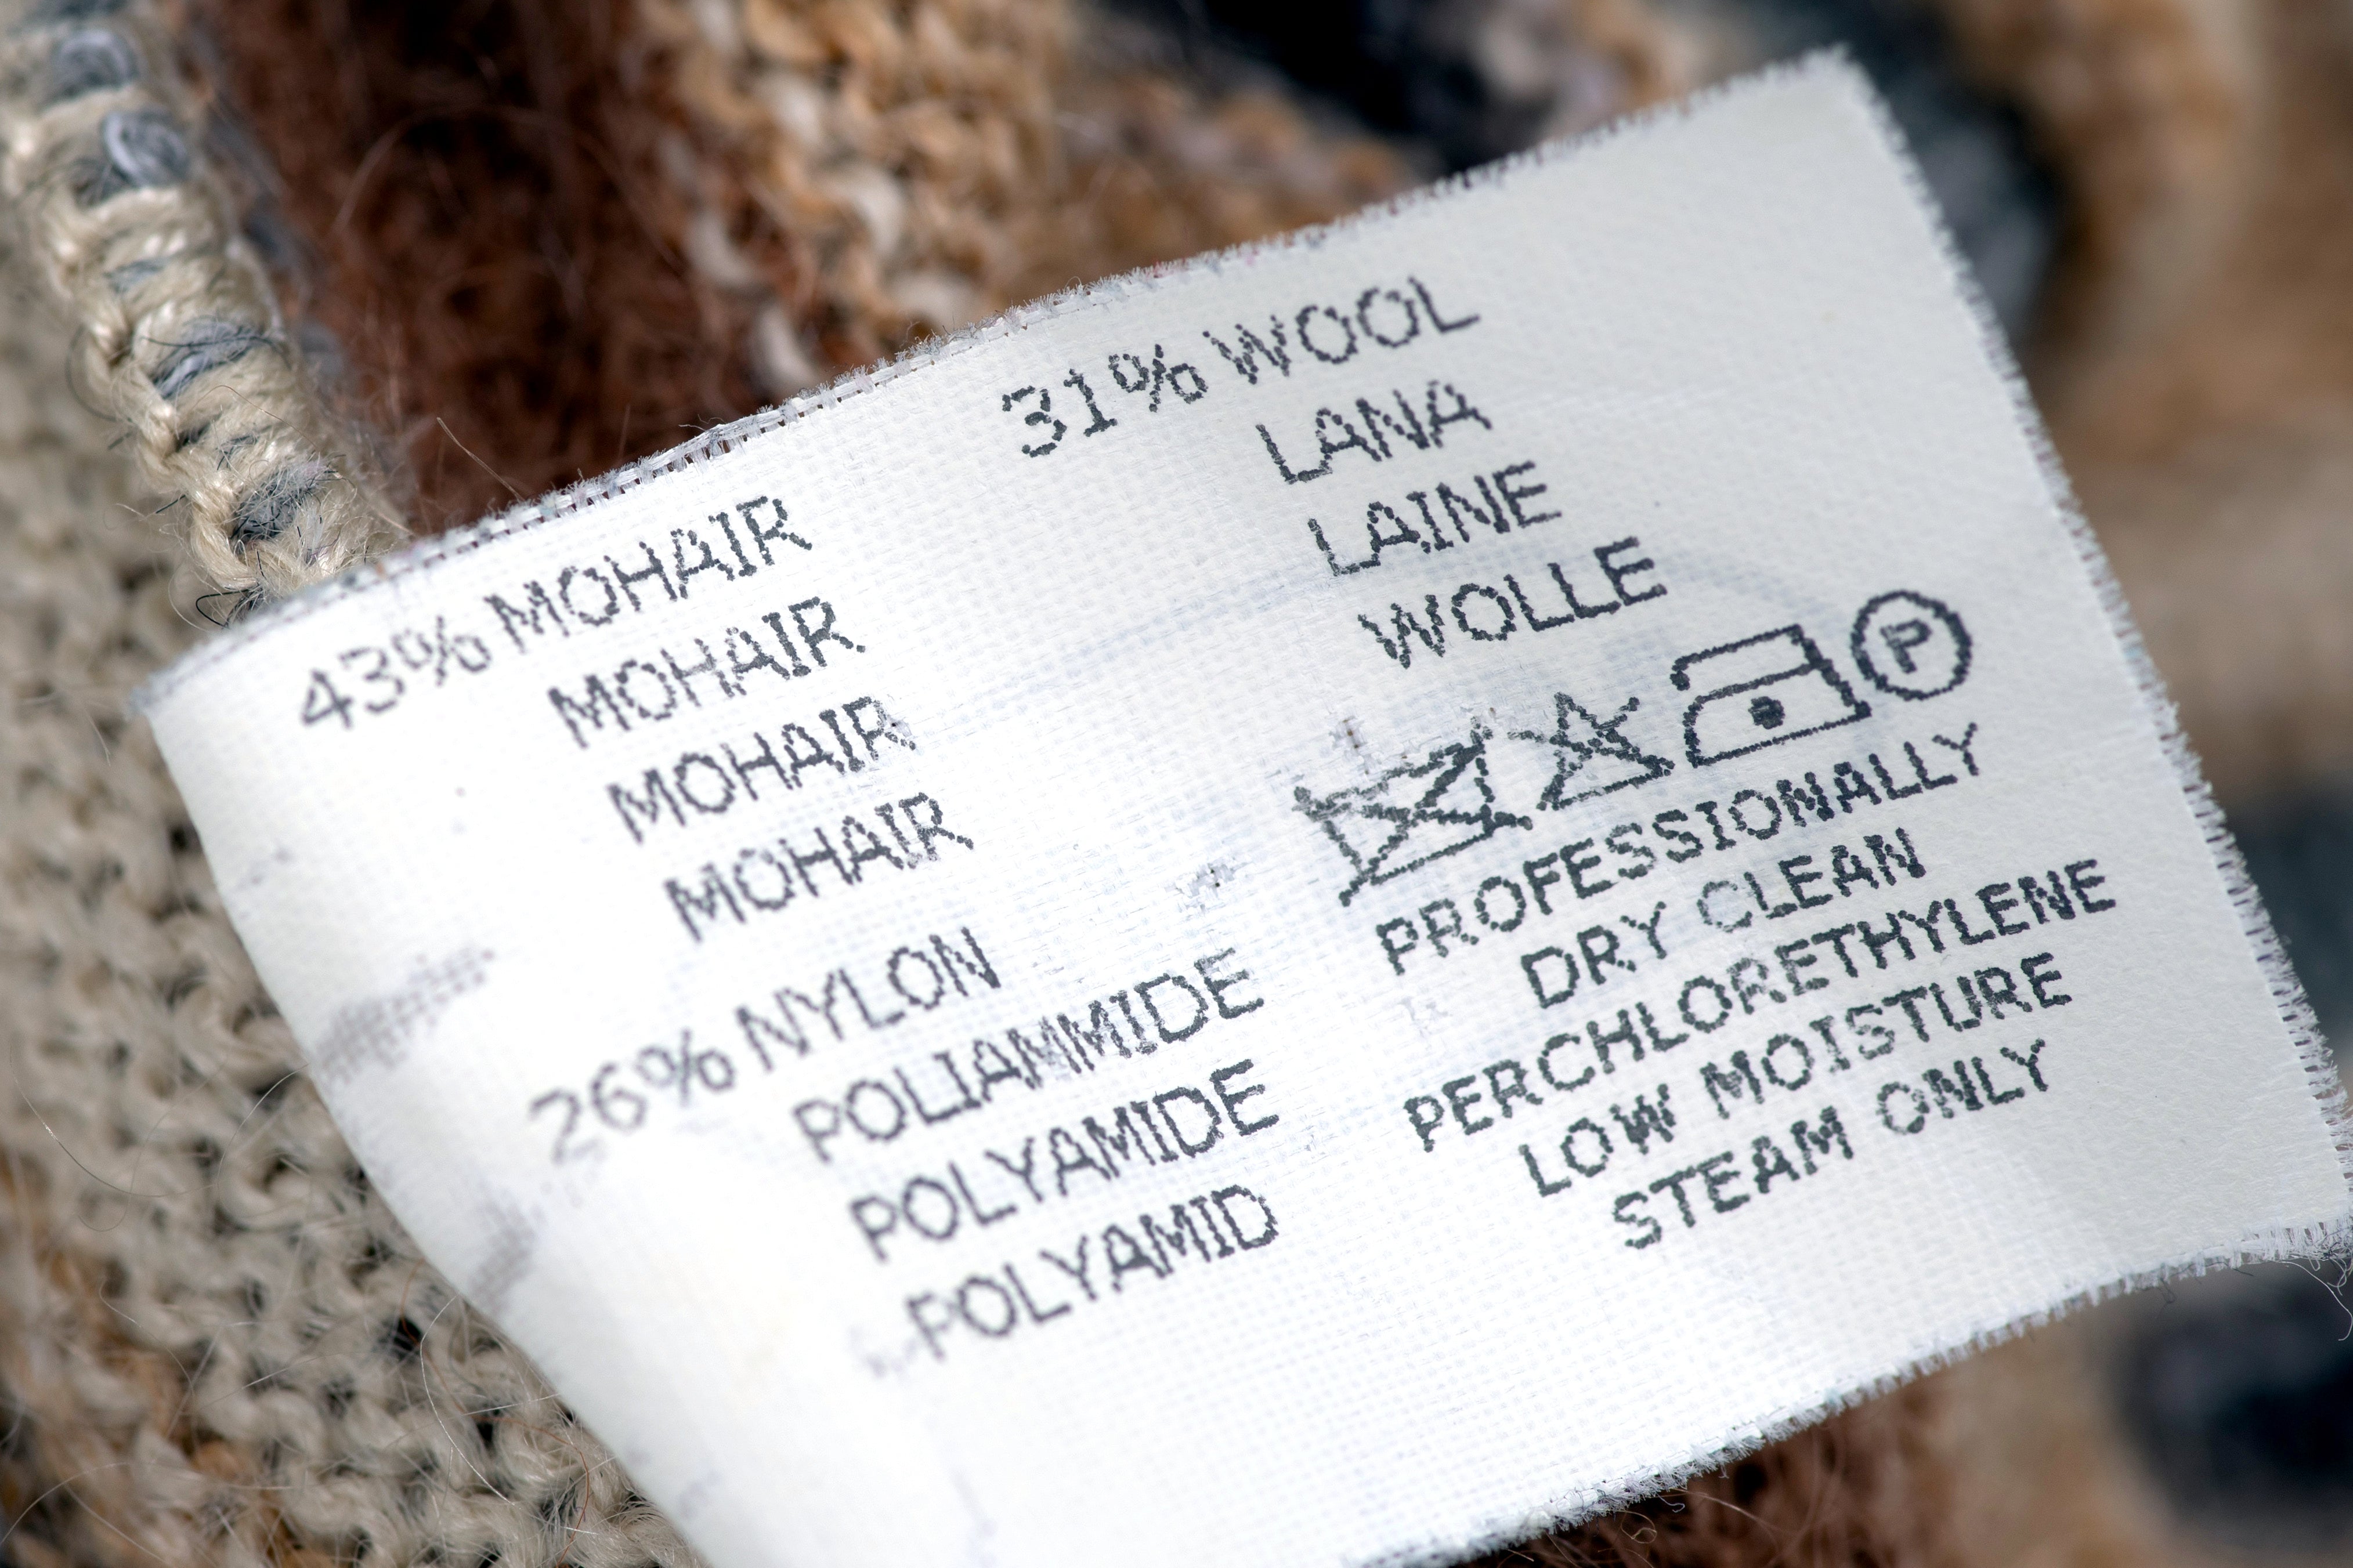 Missoni Mohair Wool Blend Women's Sweater, Size M (IT 44)